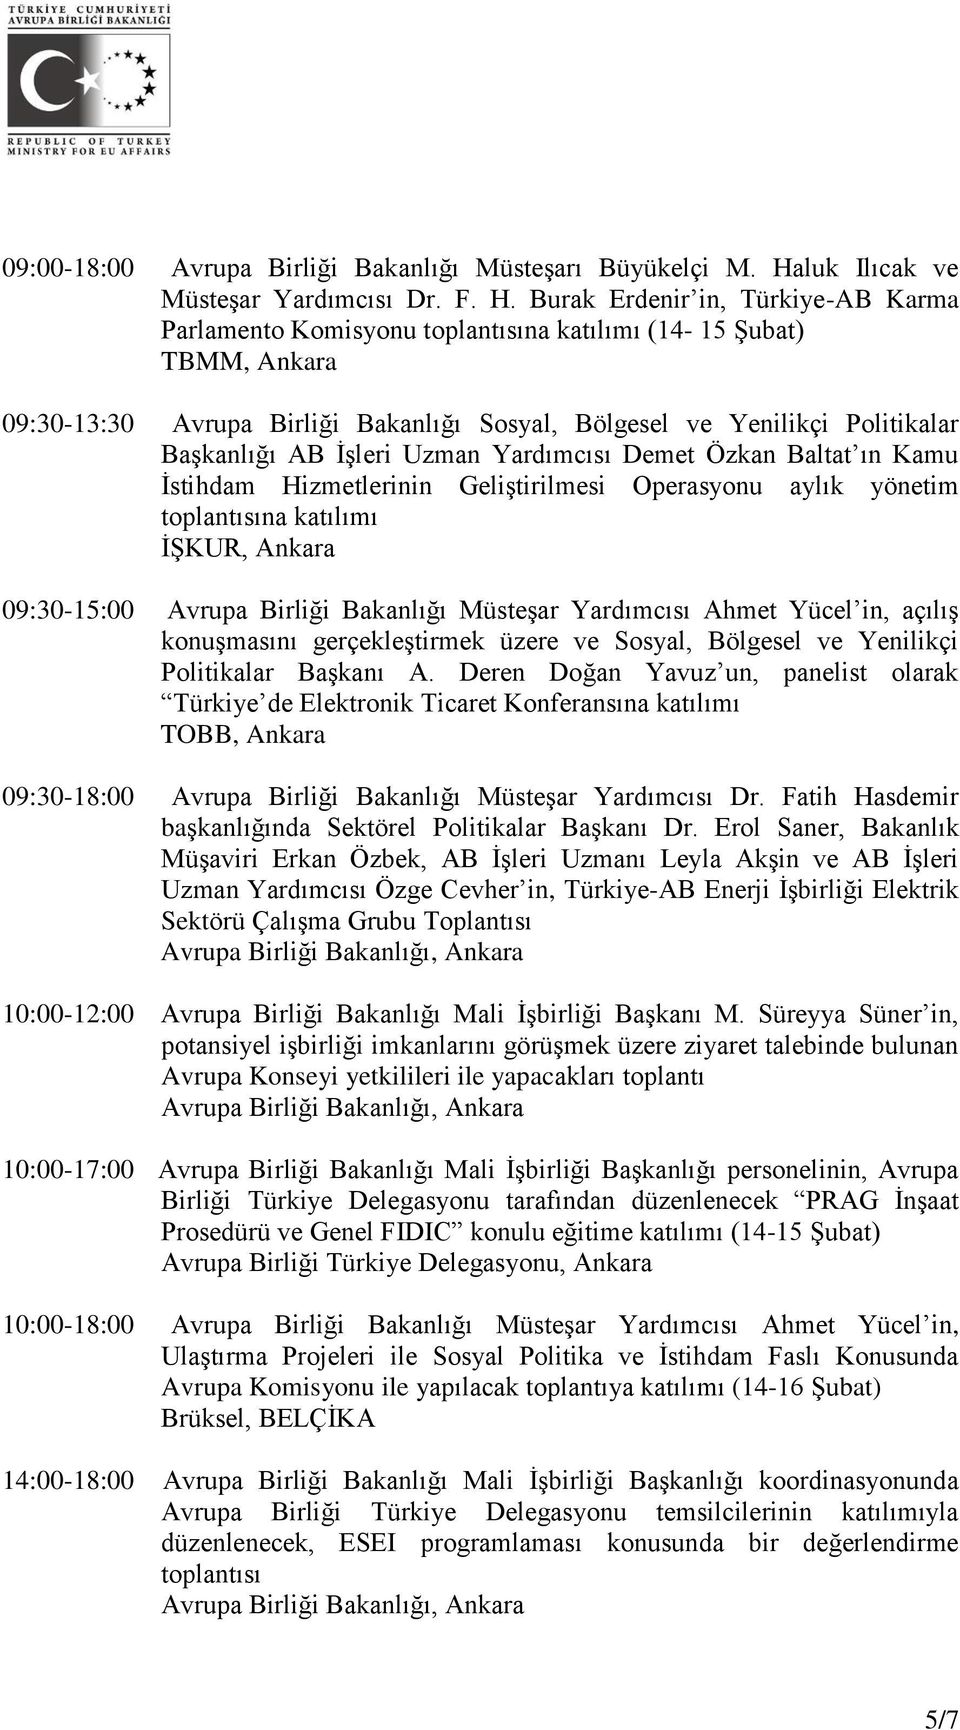 Burak Erdenir in, Türkiye-AB Karma Parlamento Komisyonu toplantısına katılımı (14-15 Şubat) TBMM, Ankara 09:30-13:30 Avrupa Birliği Bakanlığı Sosyal, Bölgesel ve Yenilikçi Politikalar Başkanlığı AB